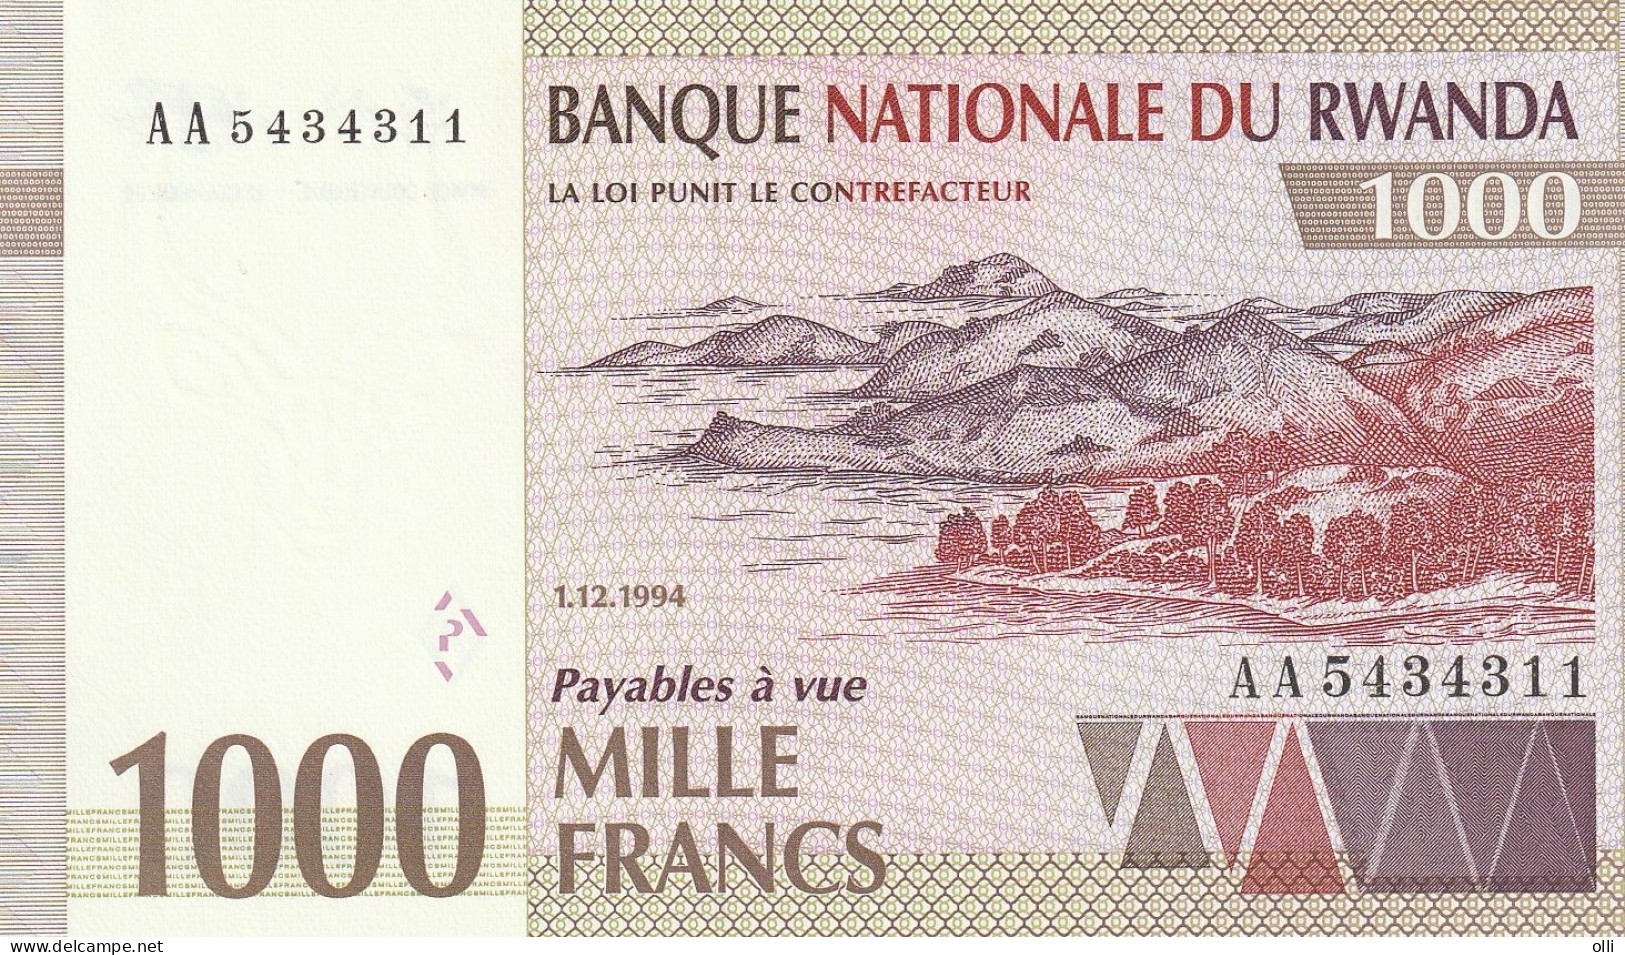 RWANDA 1000 Francs 1994 P-24 UNC - Rwanda